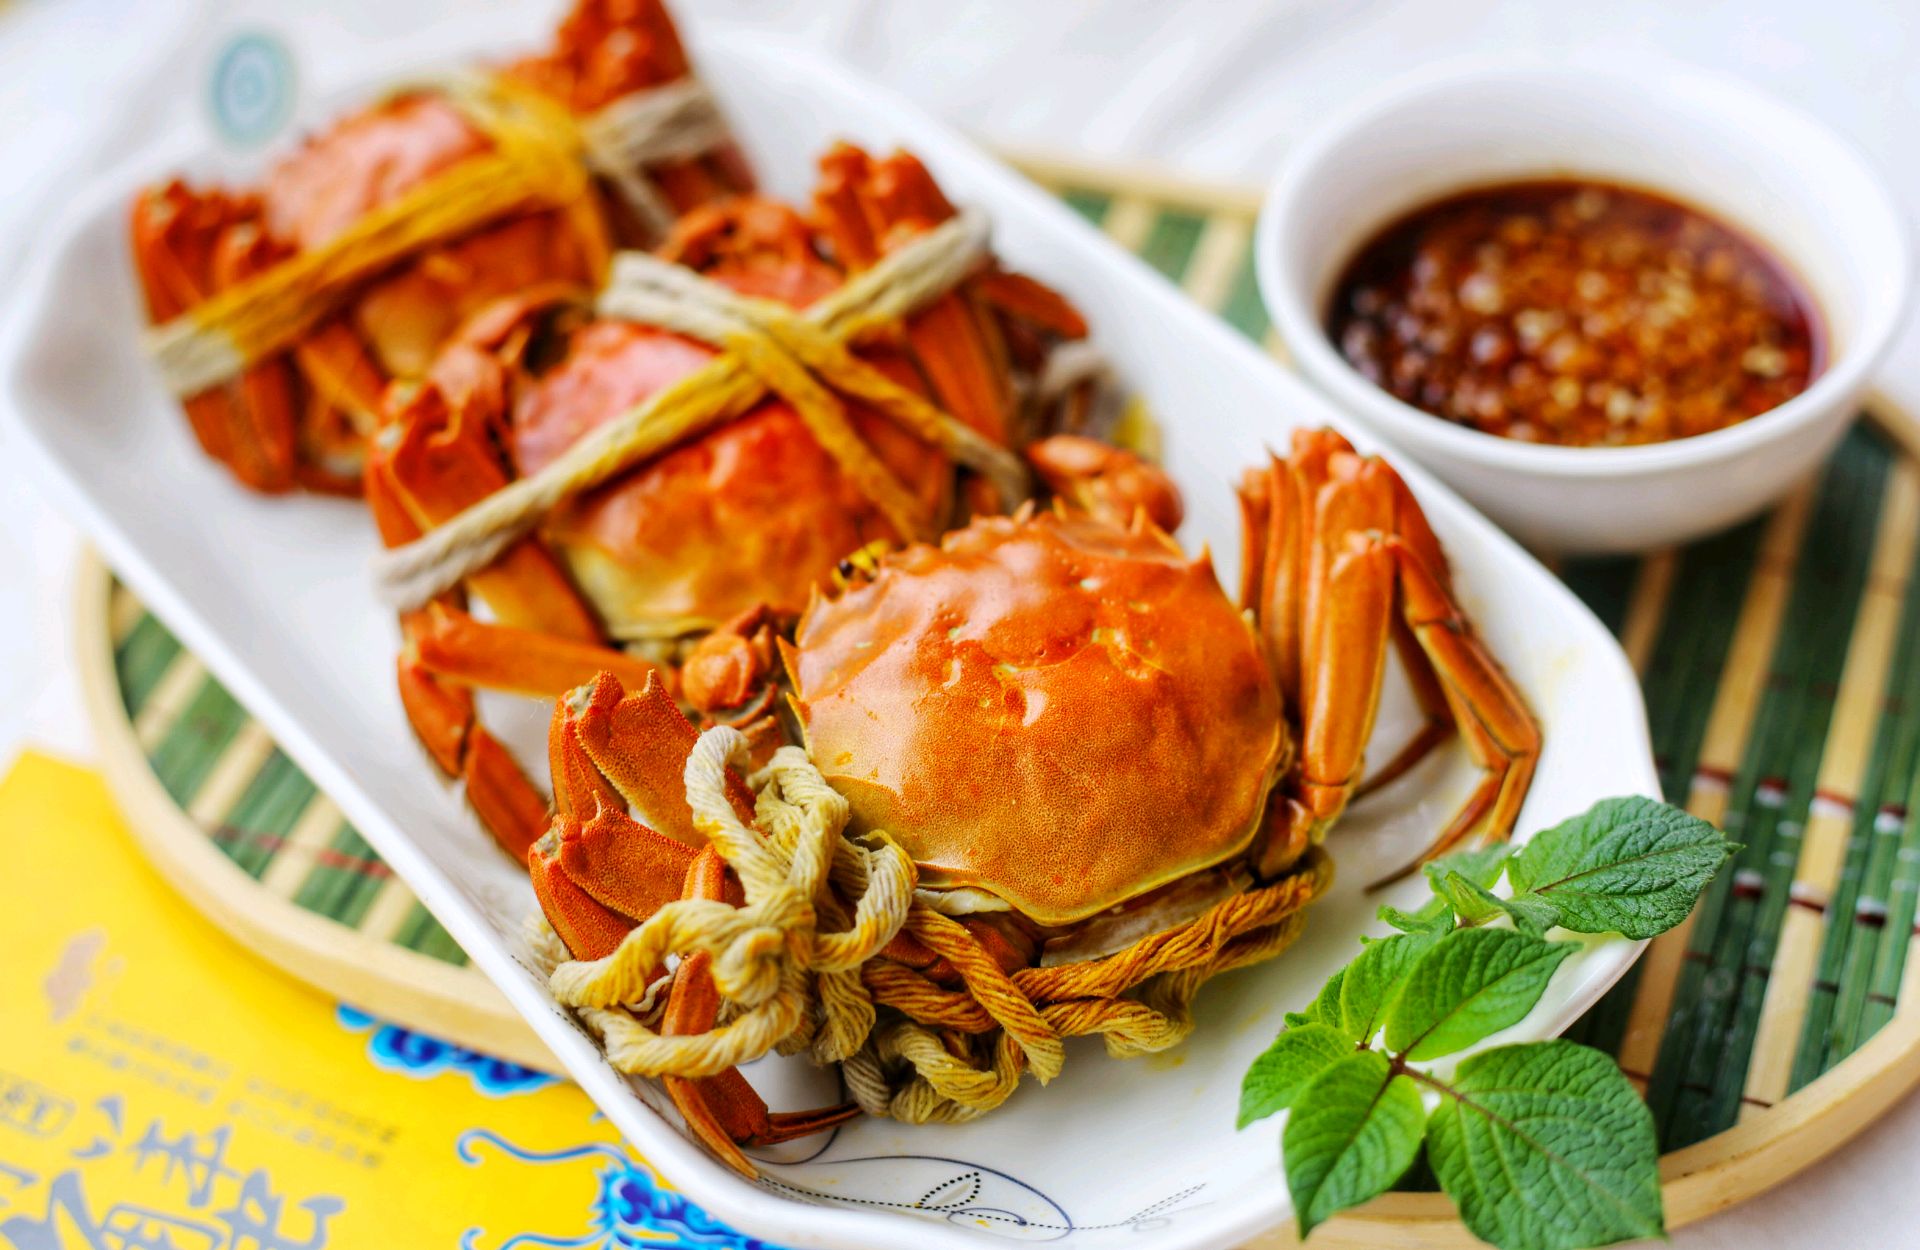 美食丨清蒸阳澄湖大闸蟹 用最简单的方法吃最鲜美的蟹